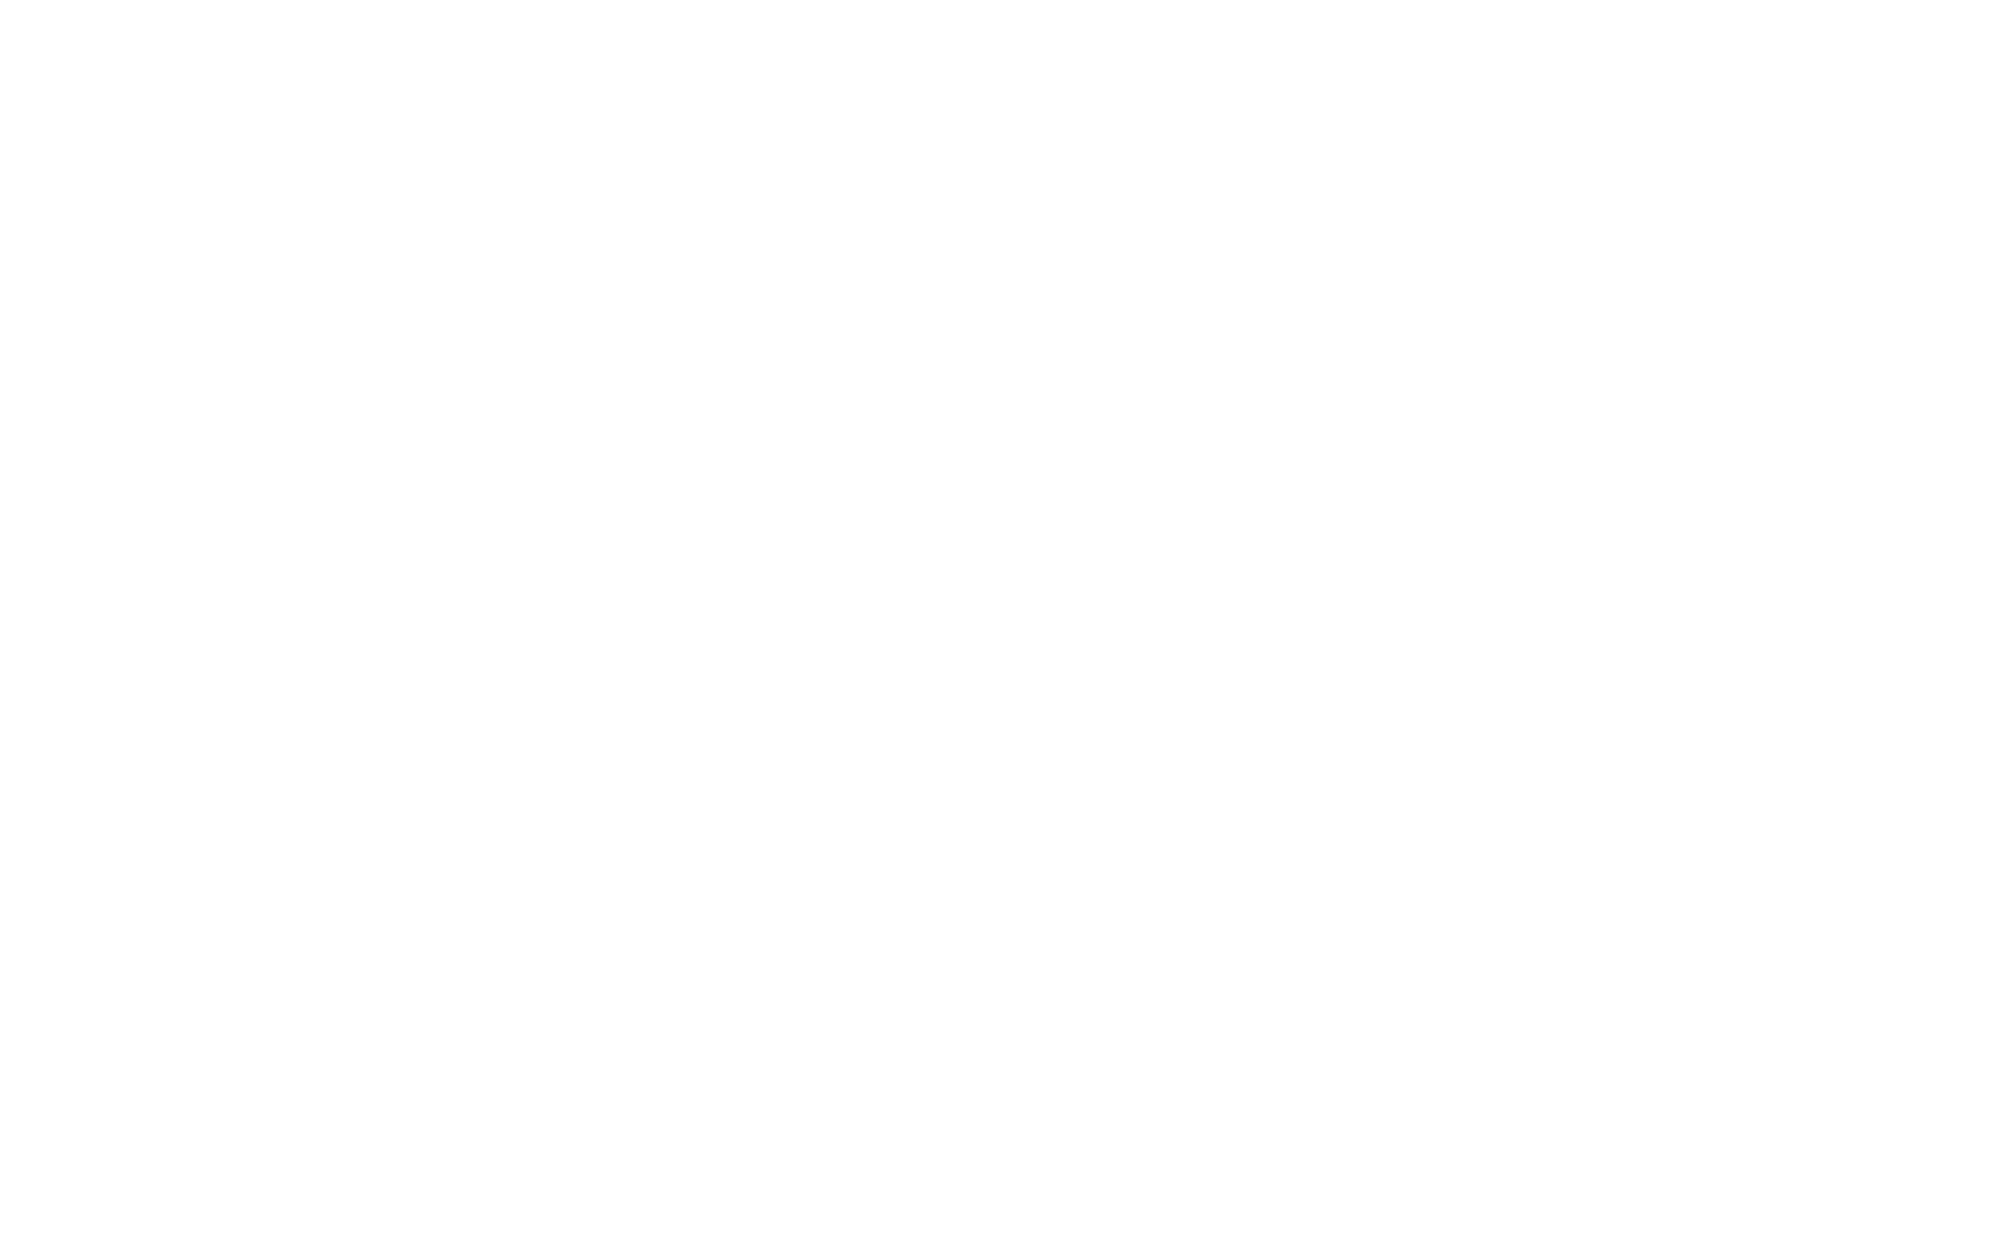 Guilherme Cortez